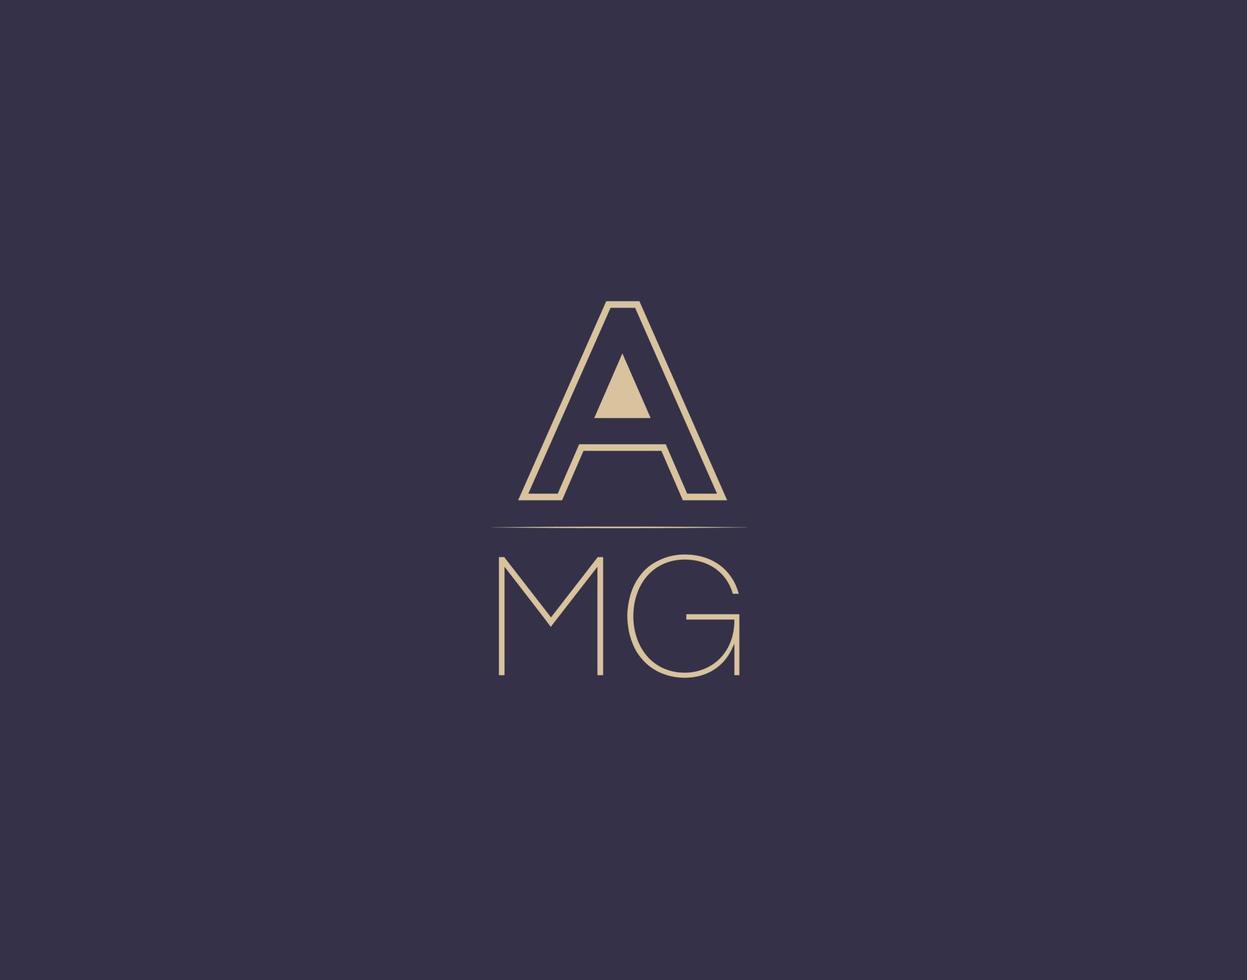 AMG letter logo design modern minimalist vector images